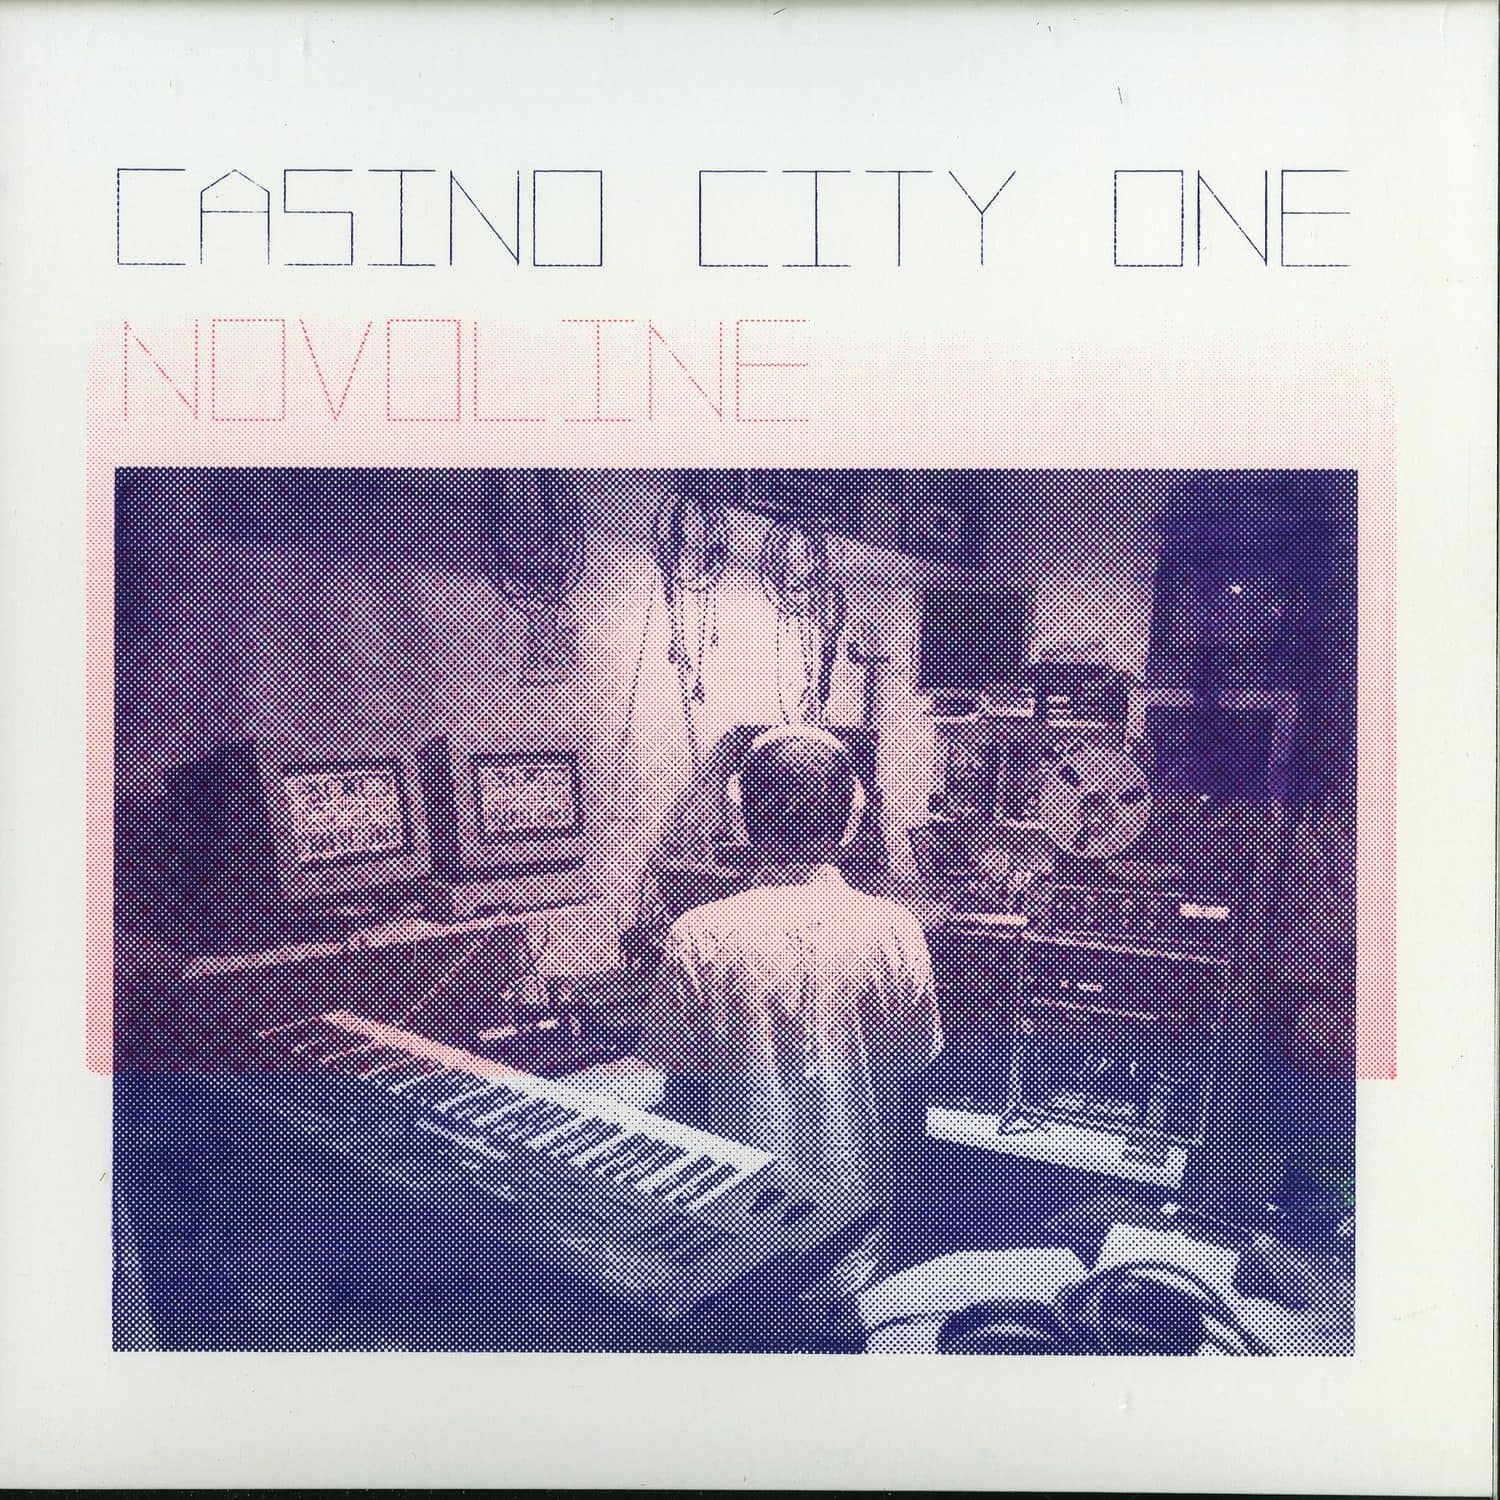 Novoline - CASINO CITY ONE EP